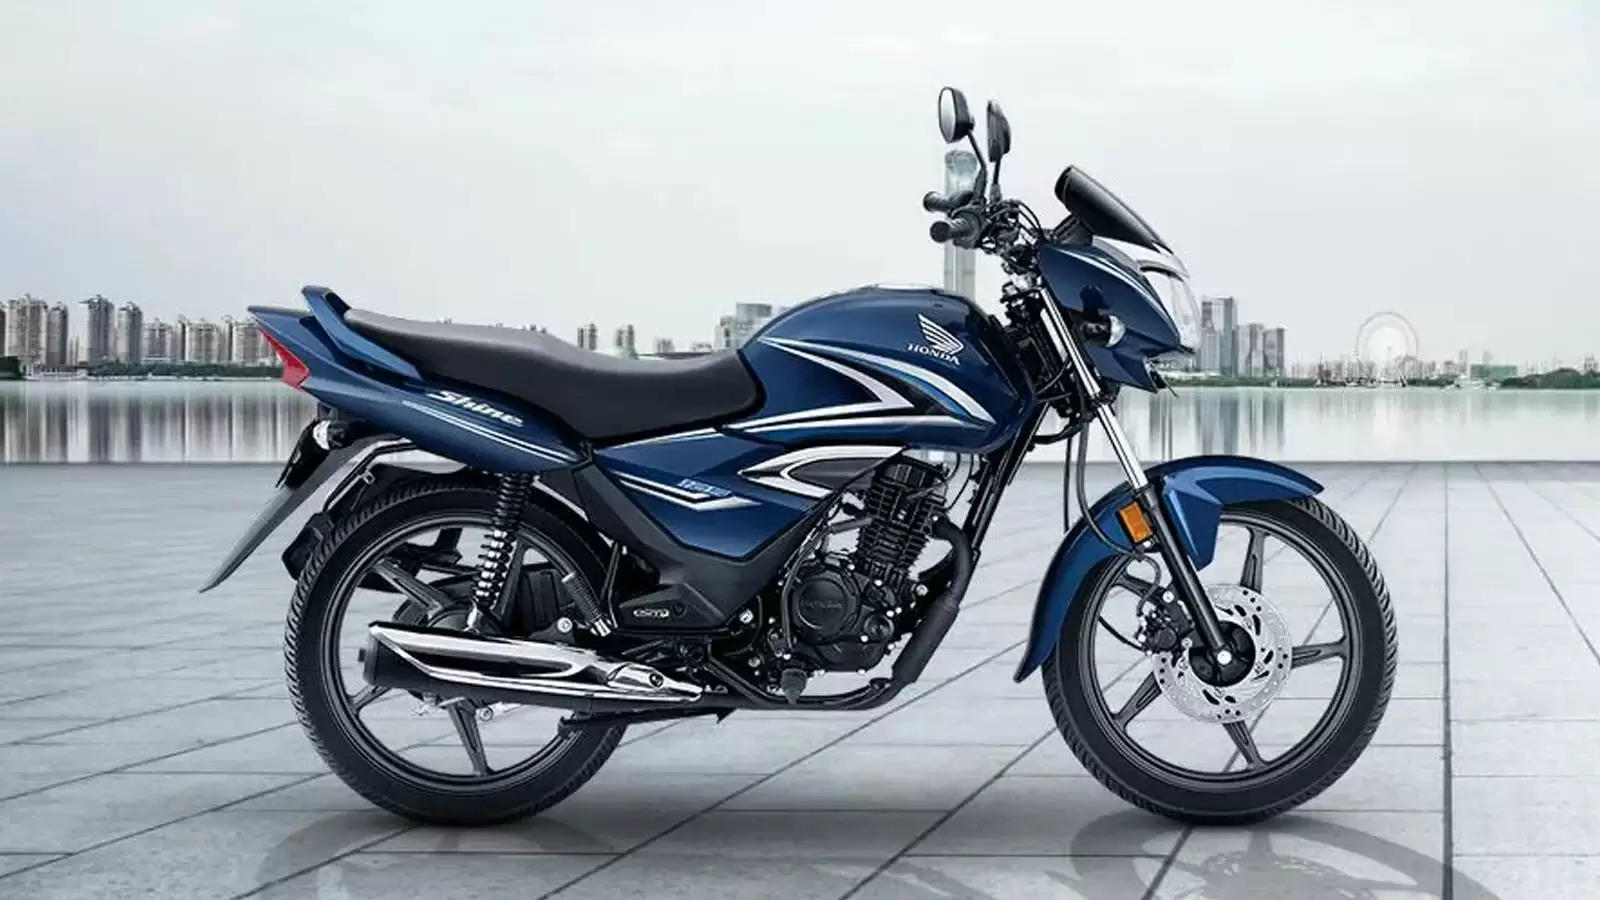 सिर्फ 17,000 रुपये में मिल रही Honda Shine बाइक, इतने में फिर नहीं मिलेगा इसे खरीदने का मौका